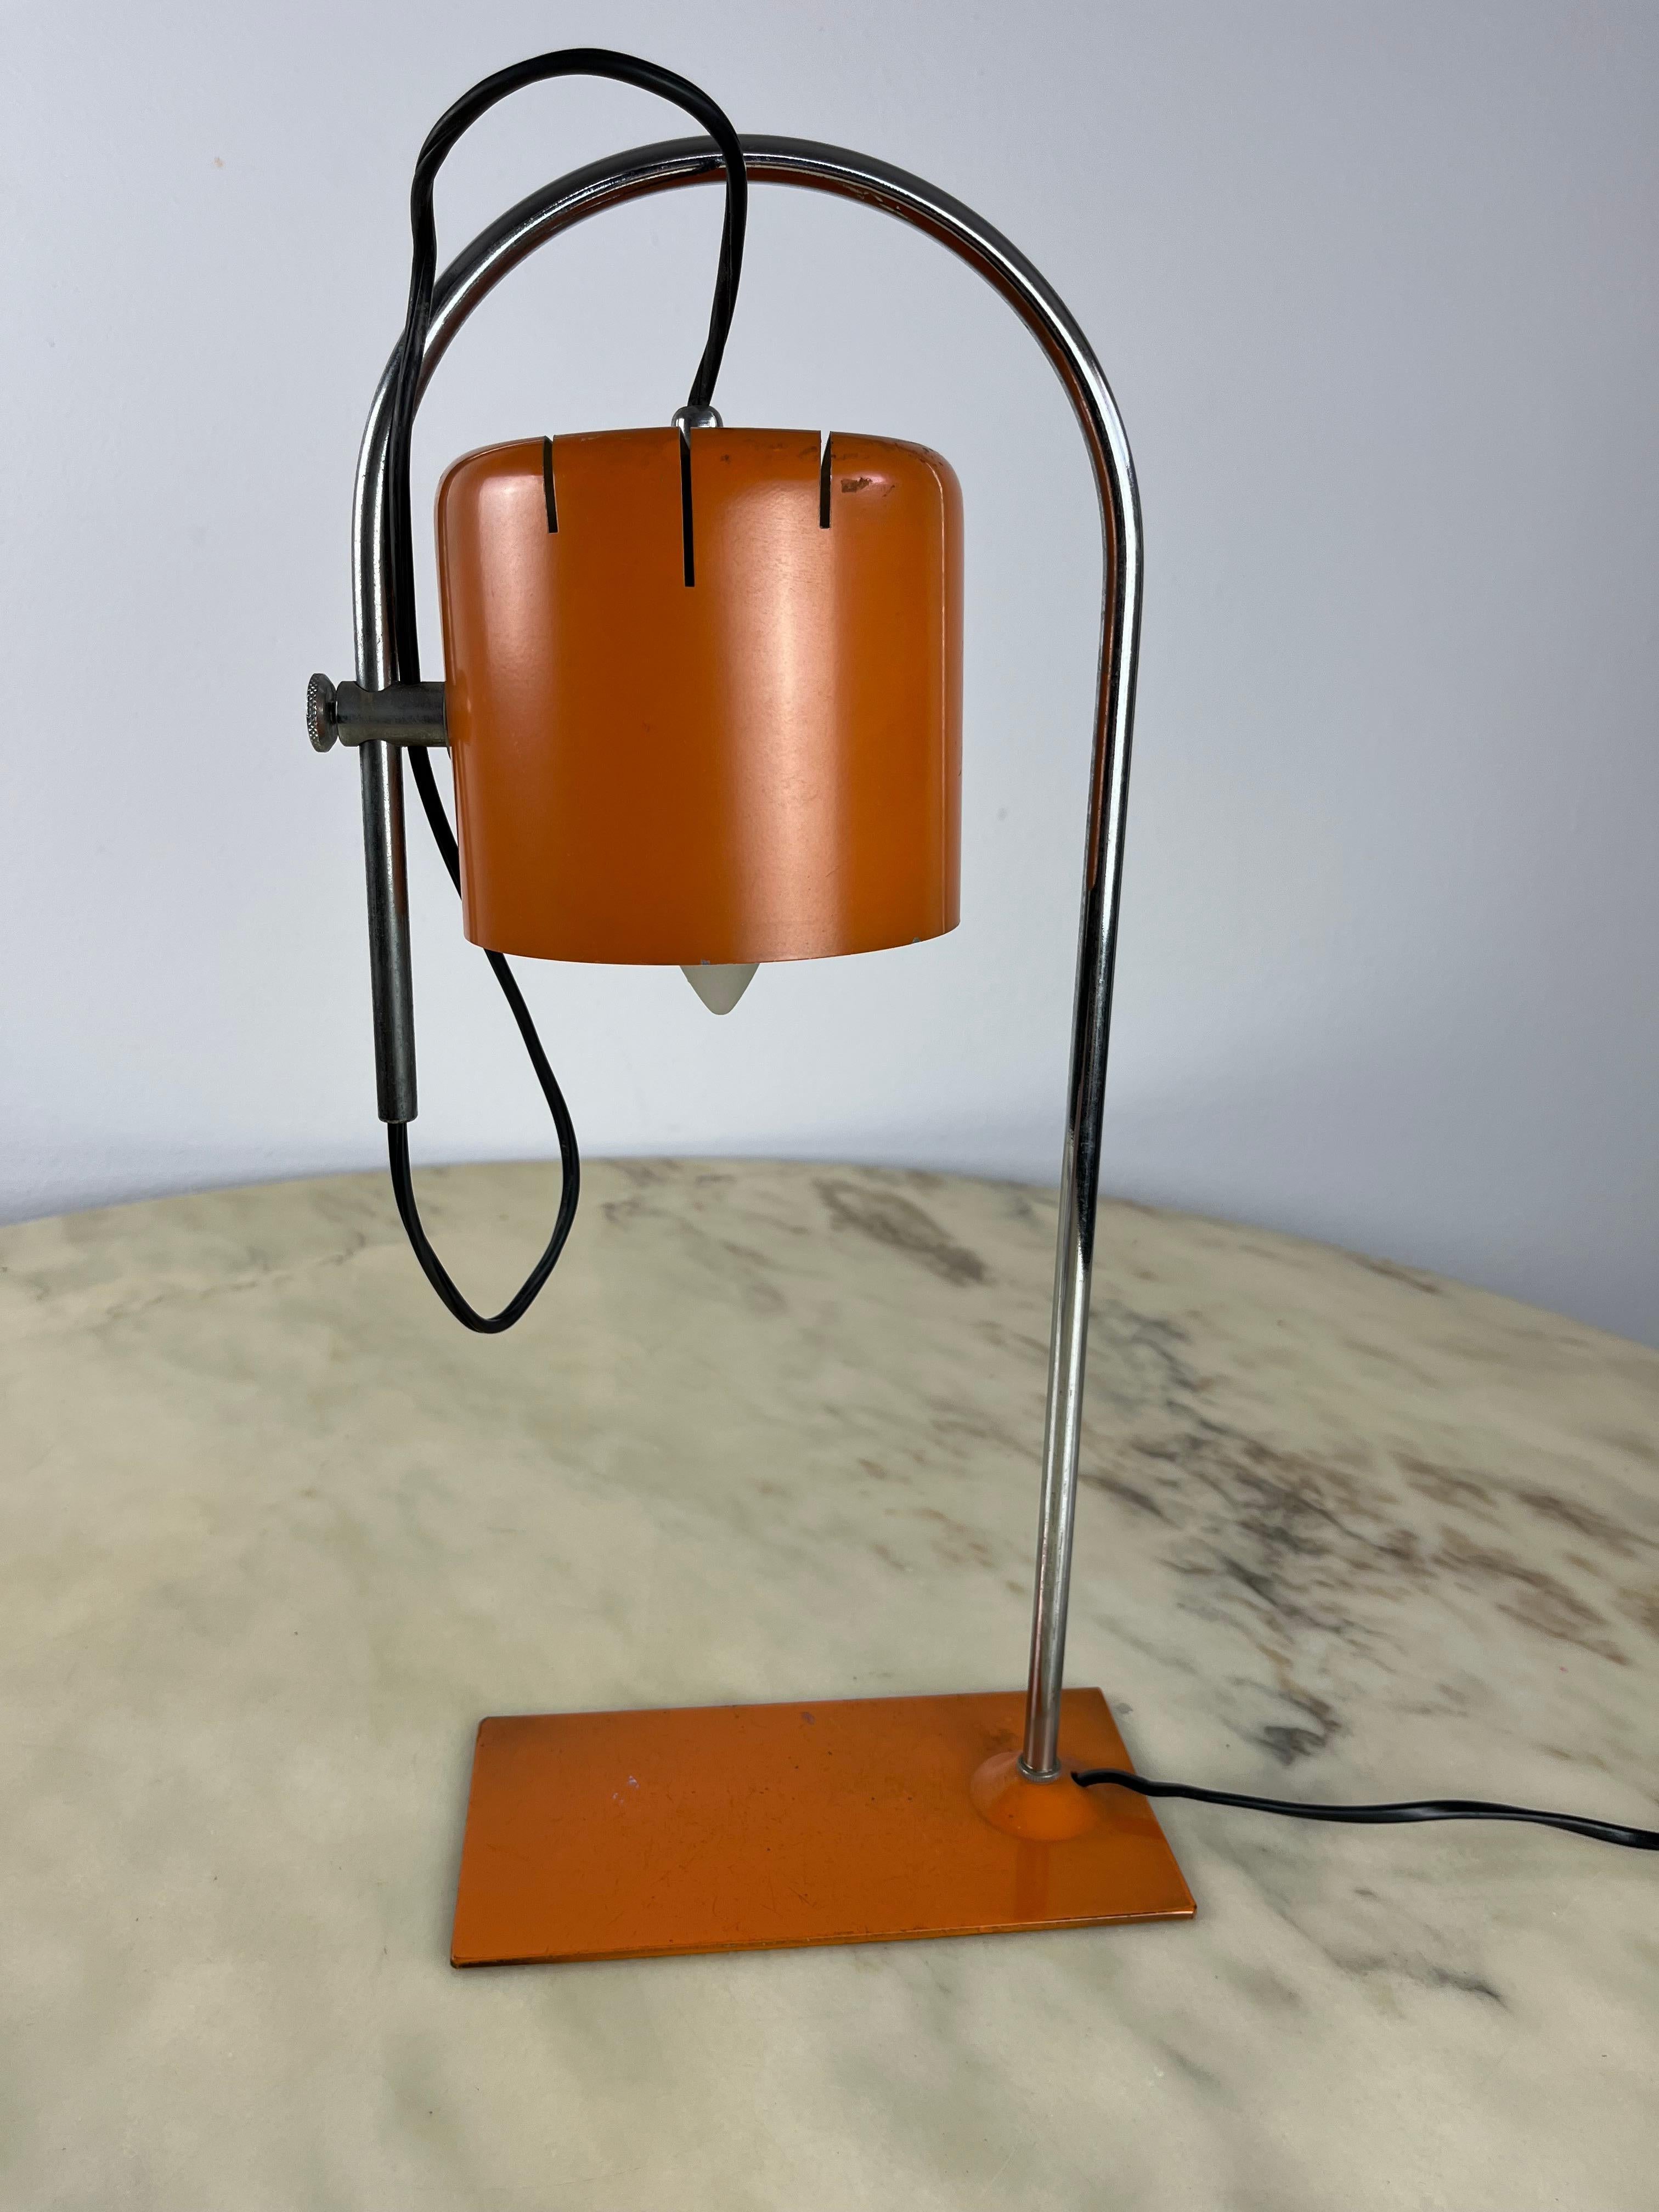 Lampe de table vintage, Italie, 1981.
Réglable, le plafonnier peut être ajusté. En état de marche, petits signes d'âge et d'utilisation qui ne compromettent pas son charme vintage.